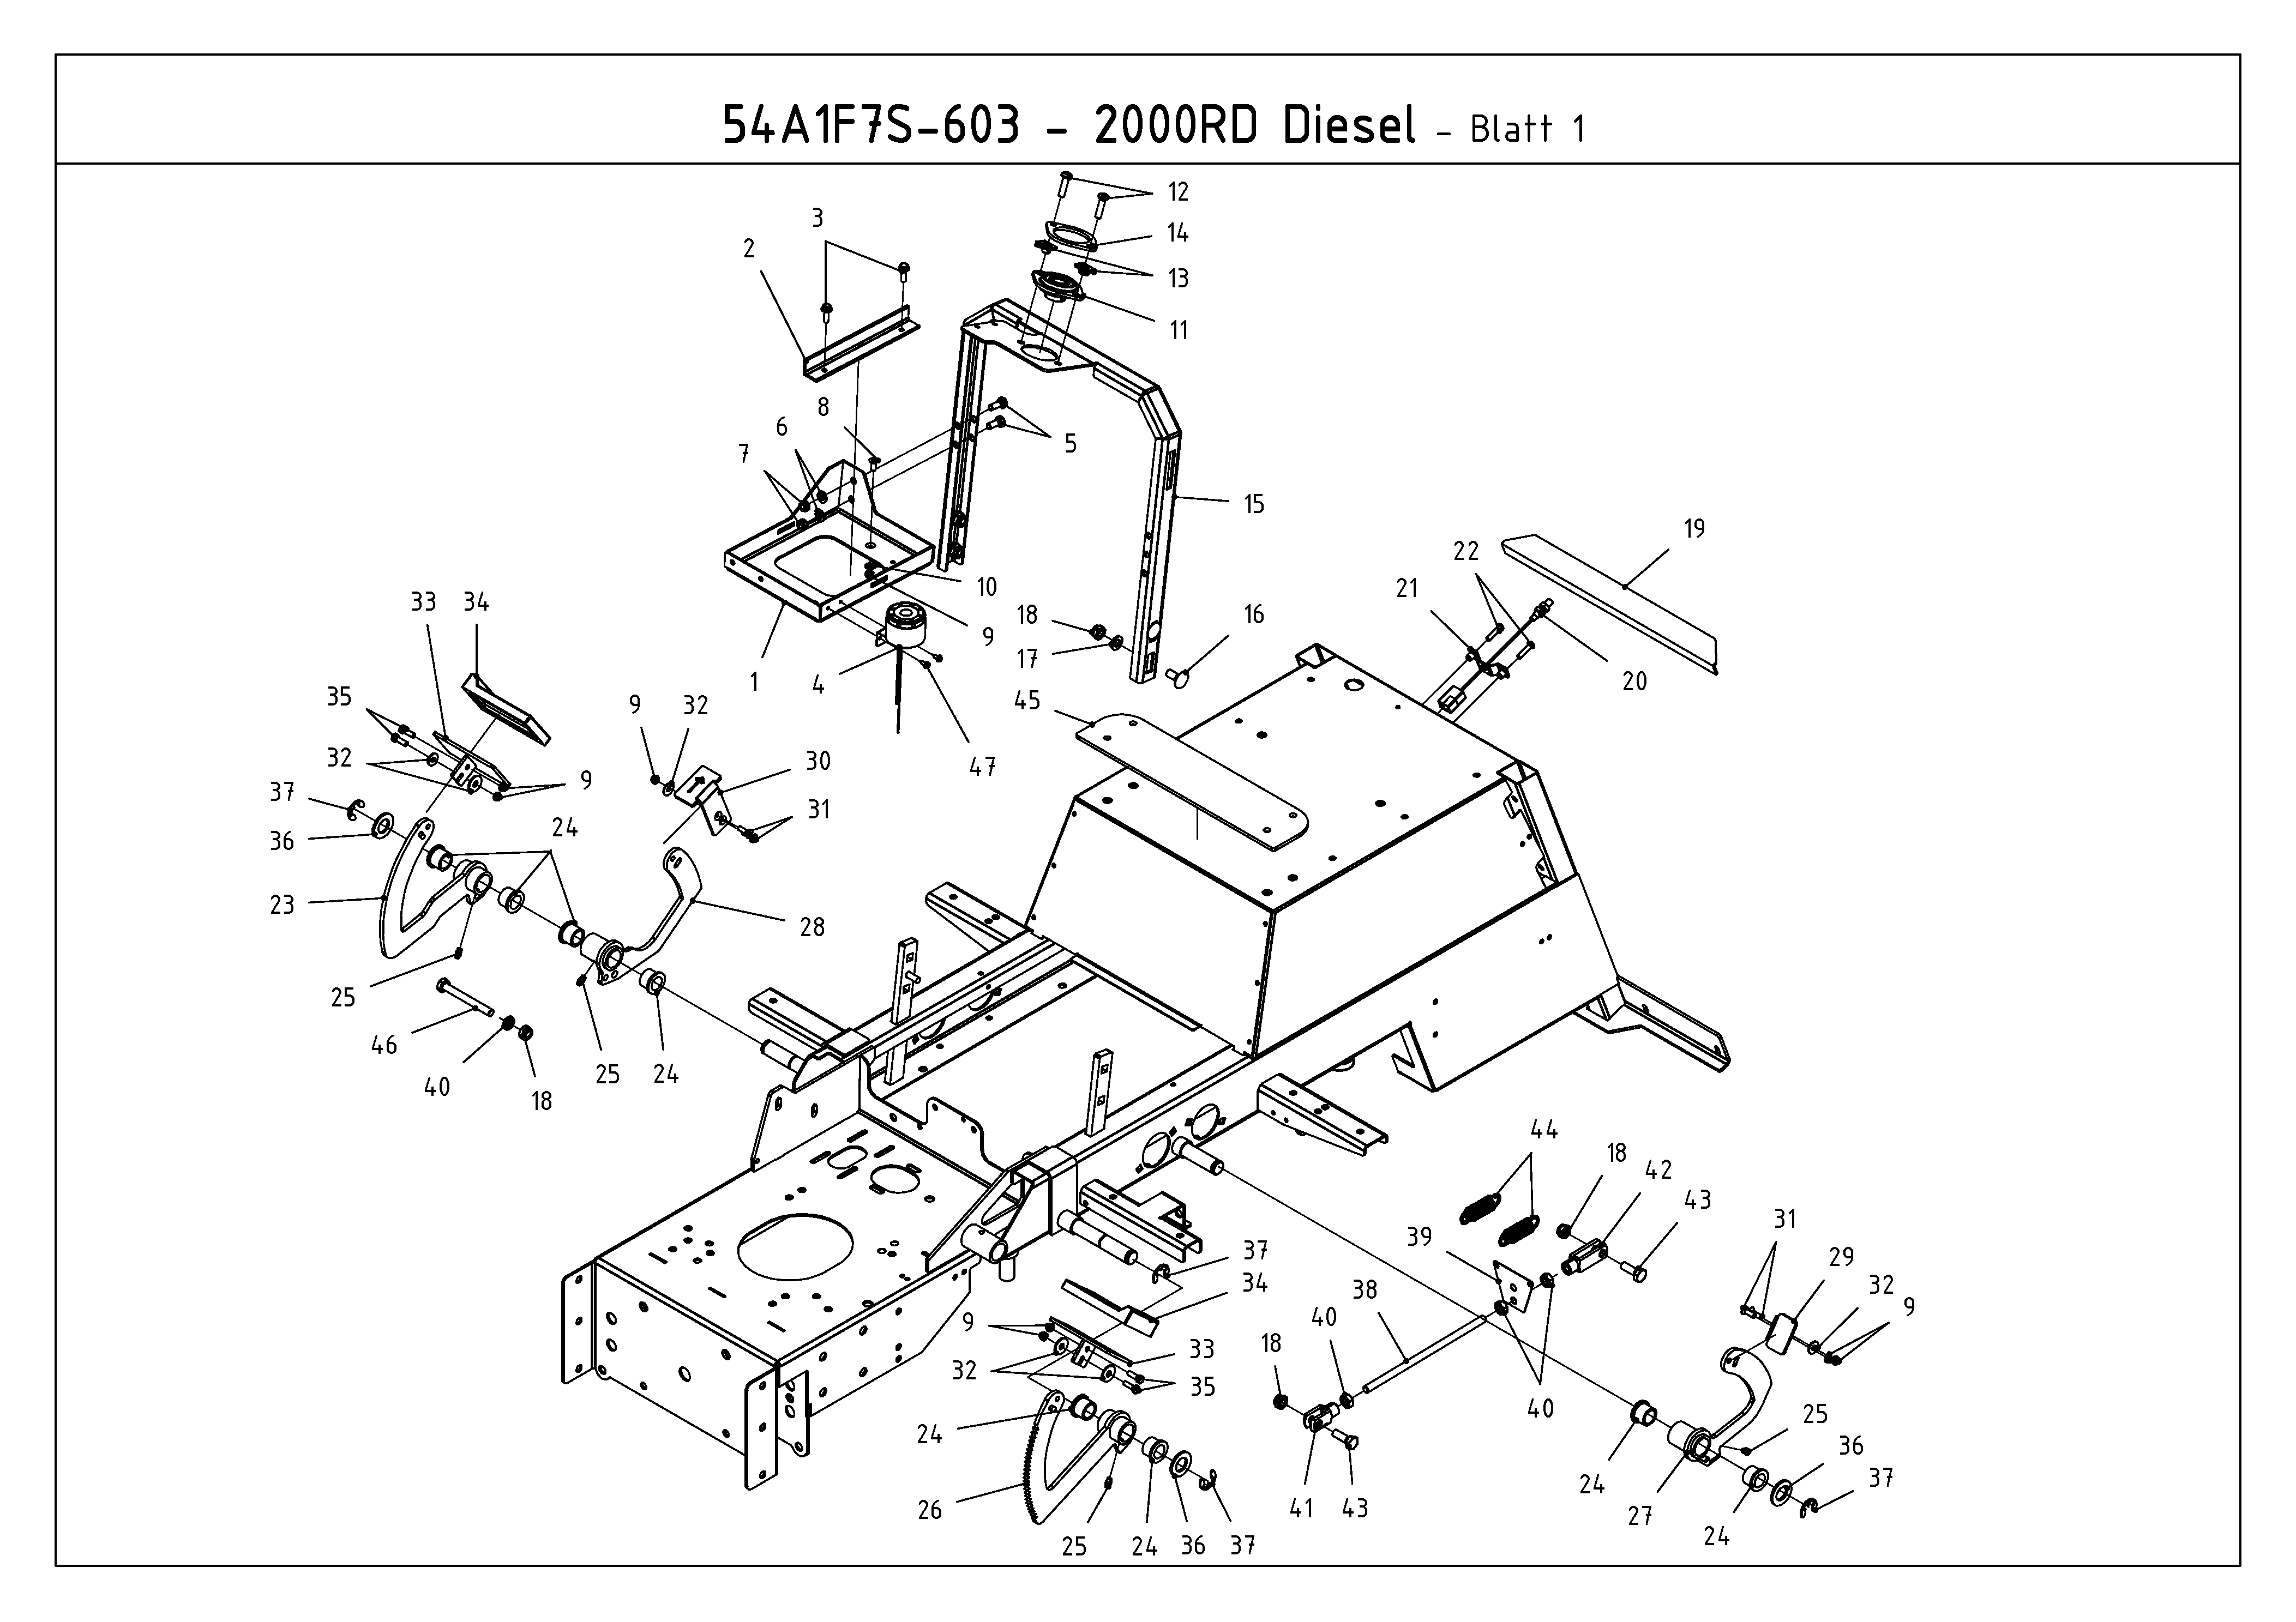 Cub Cadet, Kompakttraktoren, CC 2000 RD, 54A1F7S-603 (2009), Pedale, MTD Ersatzteil-Zeichnungen